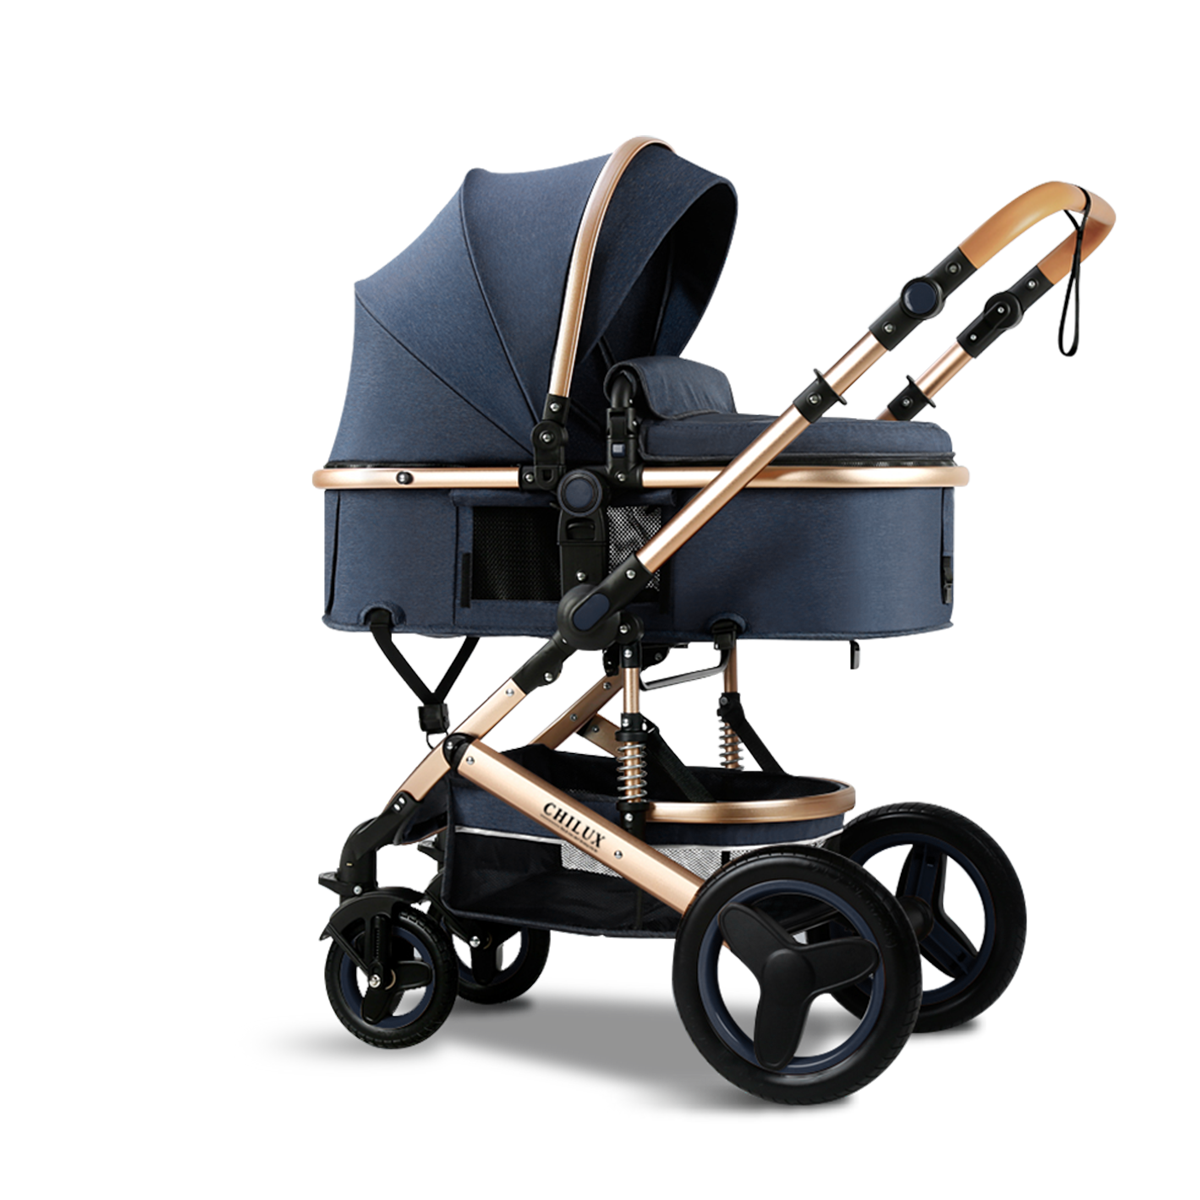 Xe đẩy nôi đa năng 2 chiều Chilux V1.6, Xe đẩy cho bé Chilux V1.6 - 9 tính năng tiện dụng cho mẹ và bé 